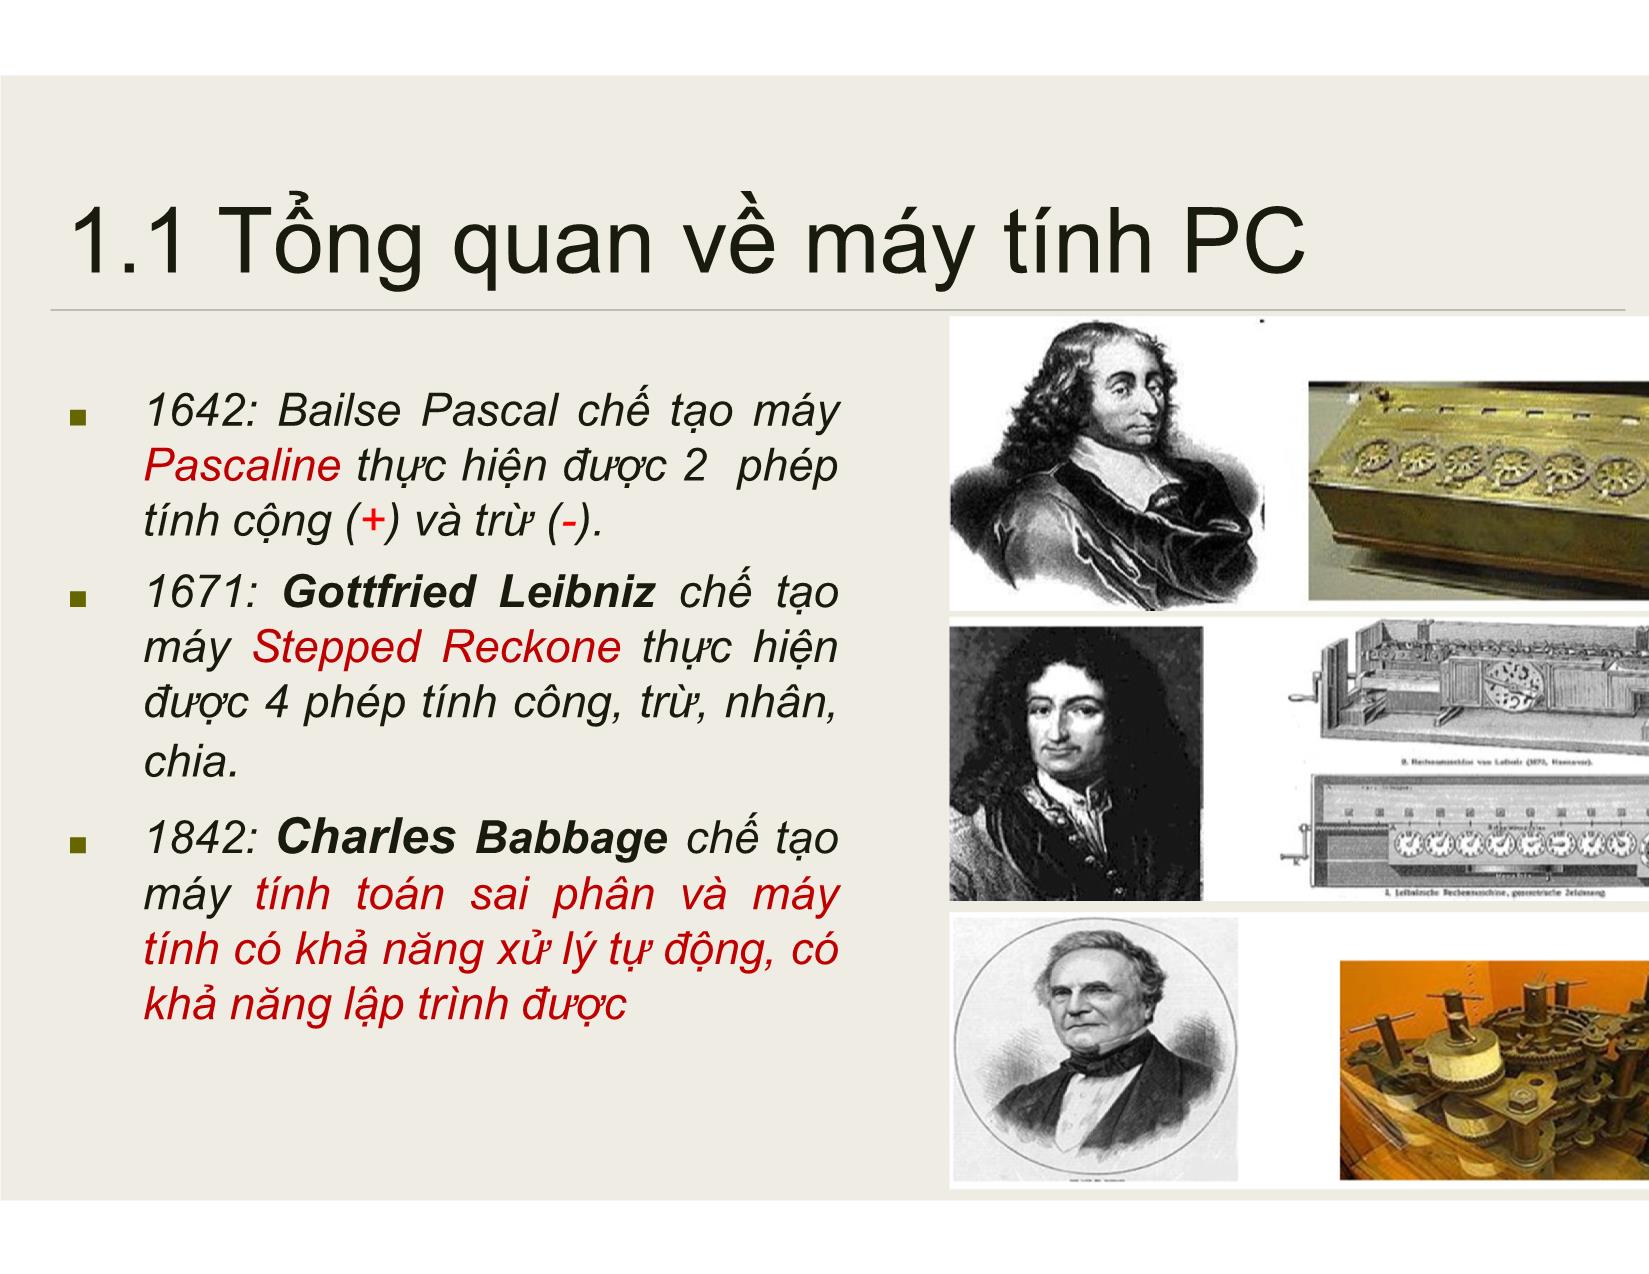 Bài giảng Bảo trì hệ thống - Chương 1: Tổng quan về PC và bảo trì các thiết bị máy tính - Nguyễn Lê Minh trang 7